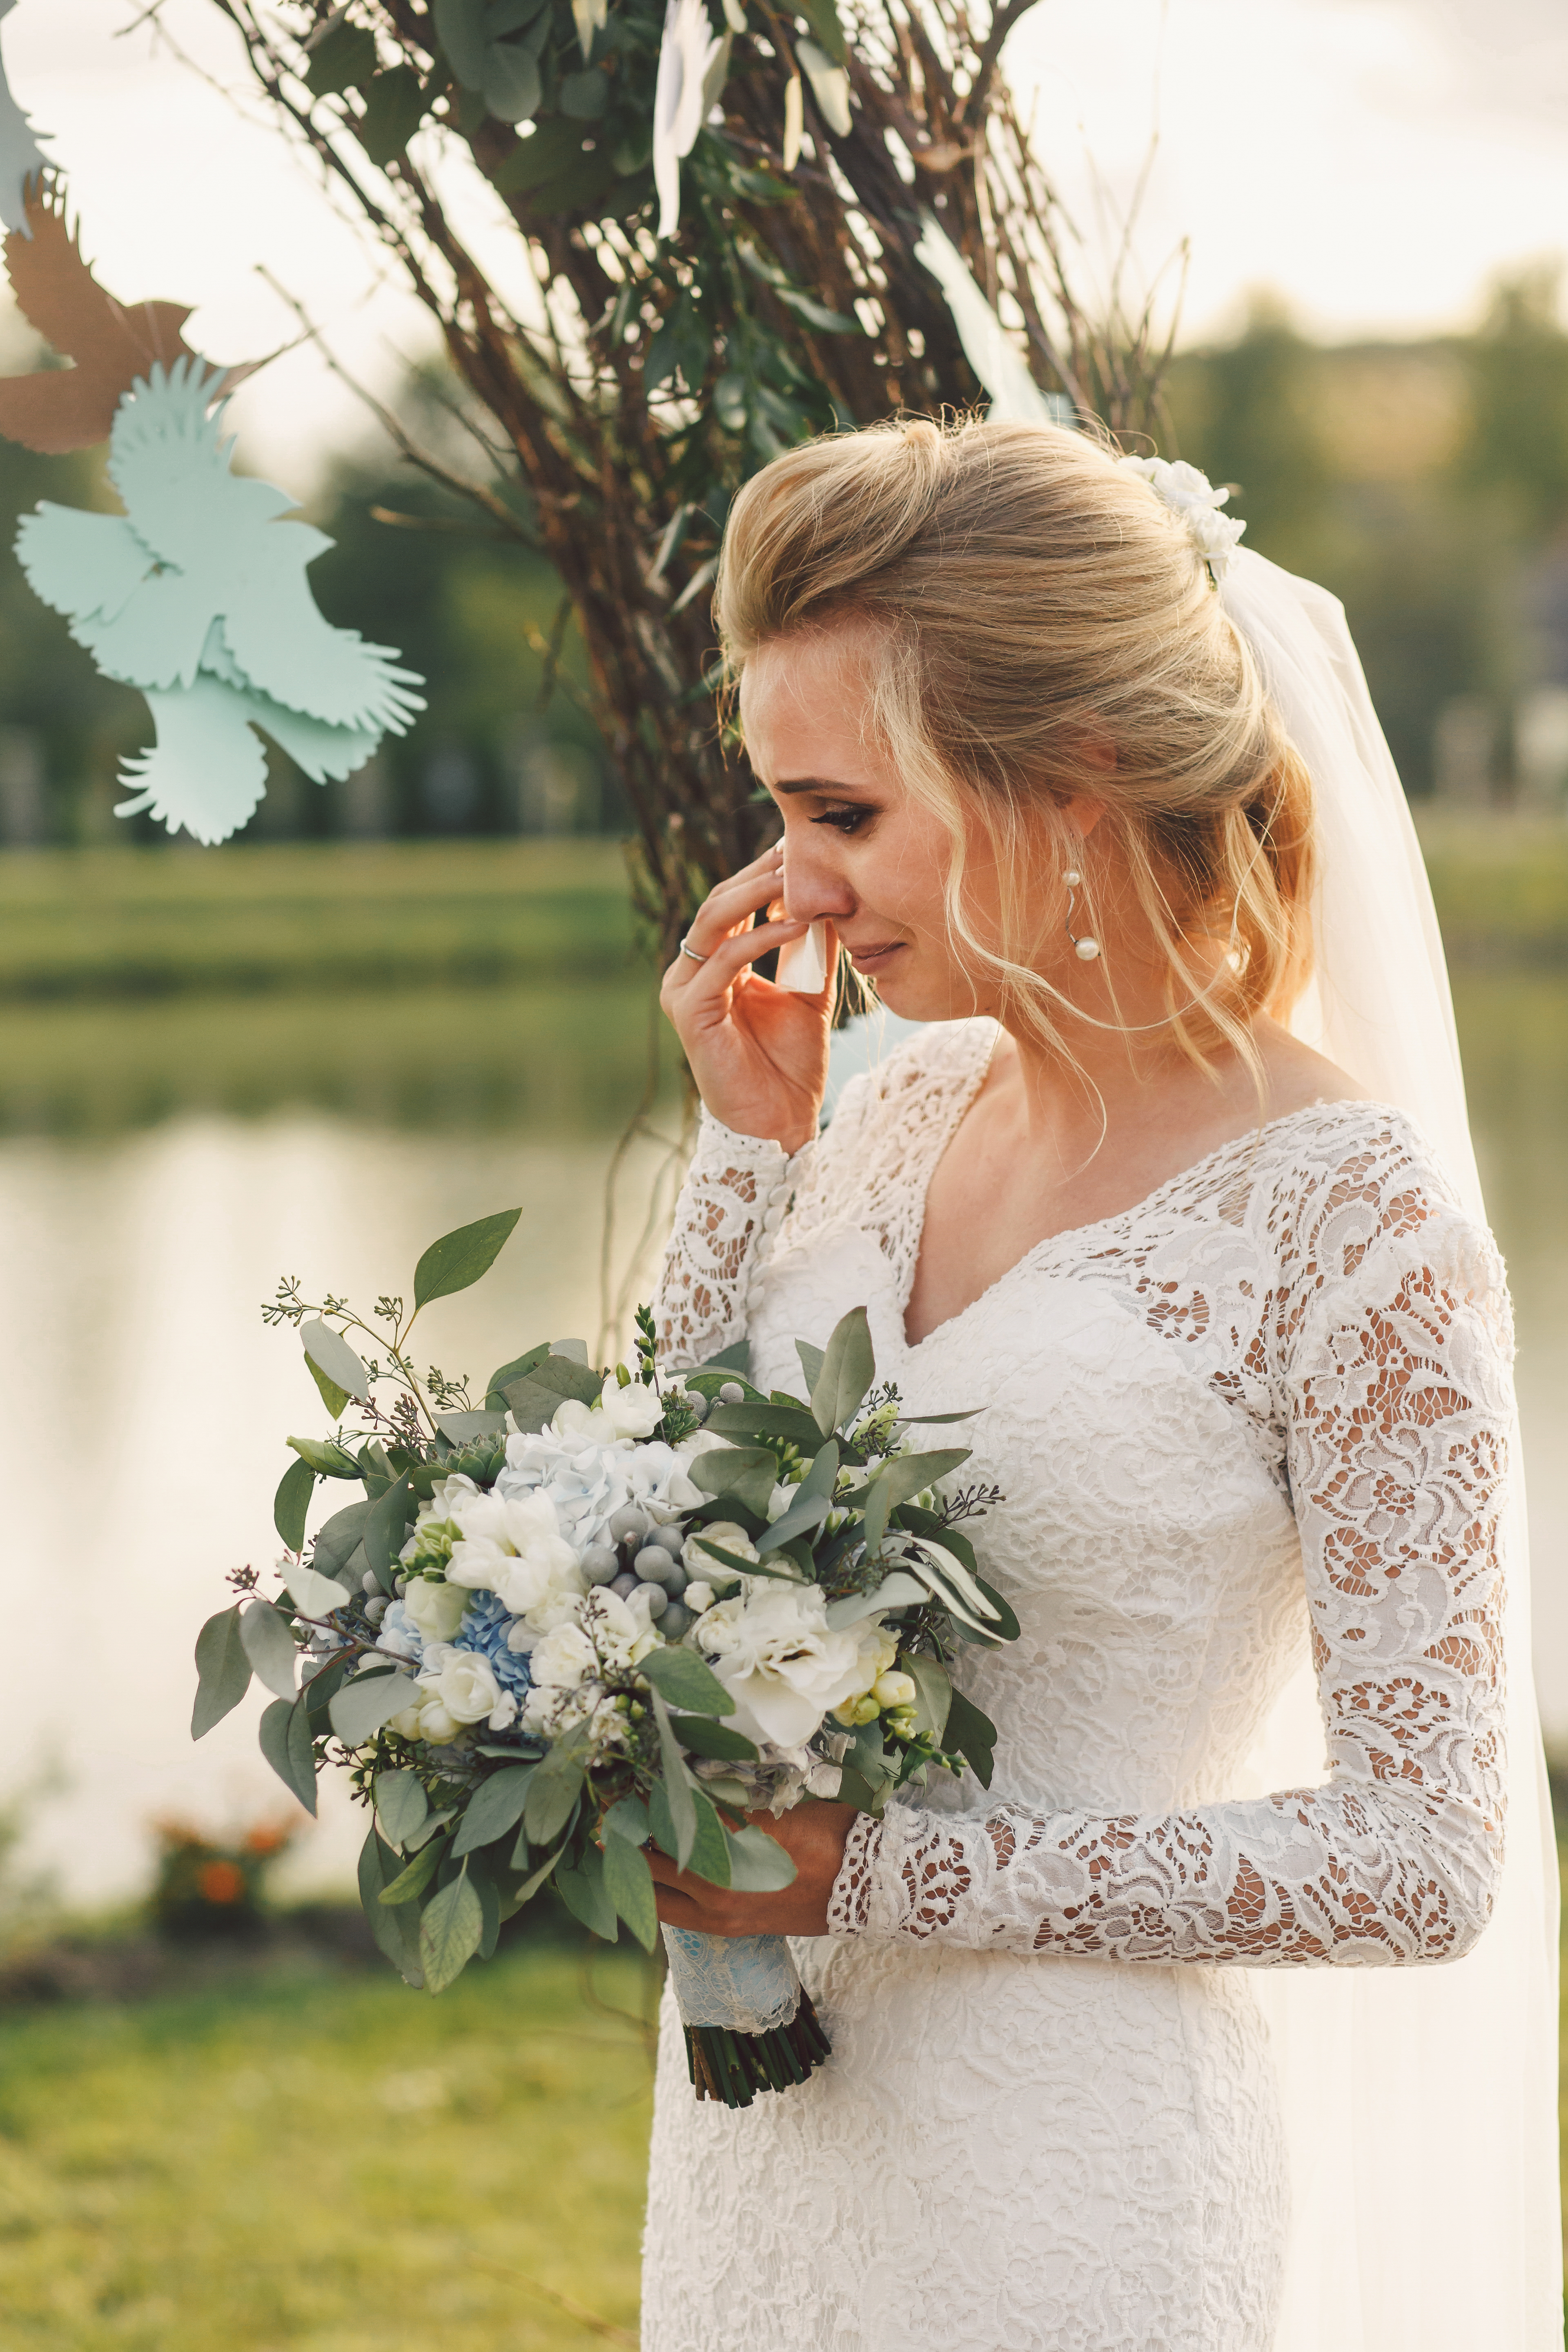 Una novia llorando al aire libre | Fuente: Shutterstock